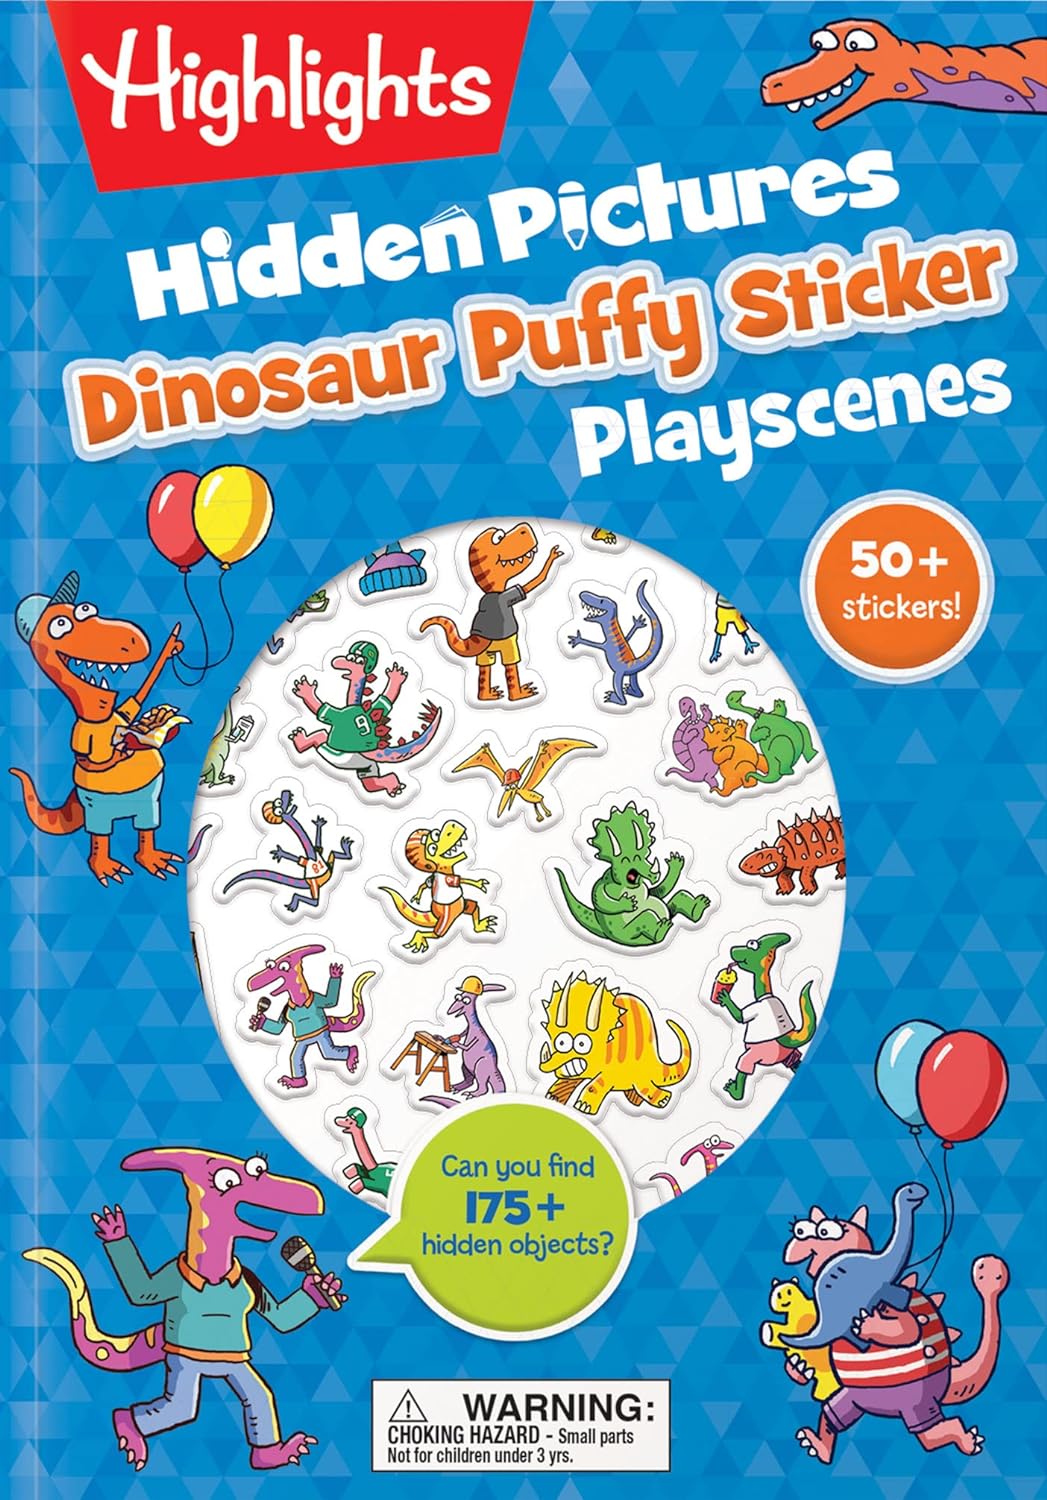 Highlights Hidden Dinosaur Puffy Sticker Playscenes